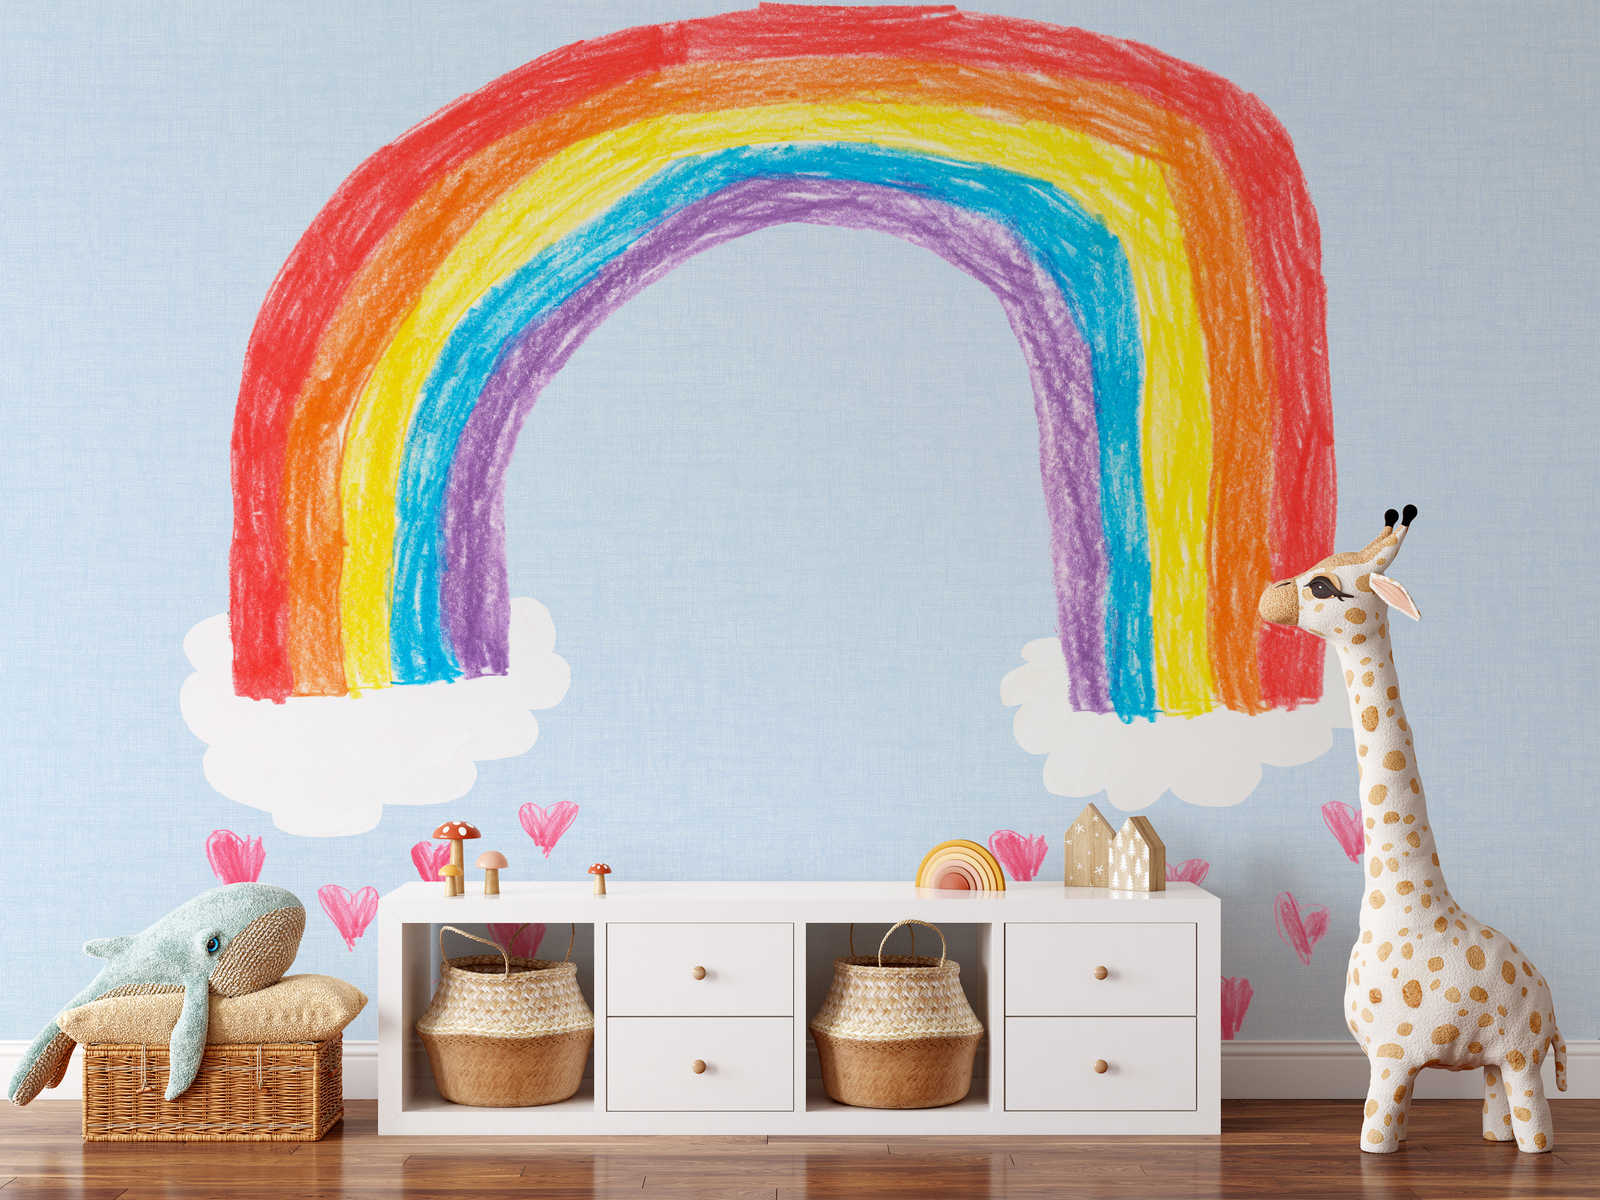             Papel pintado de arco iris para la habitación de los niños
        